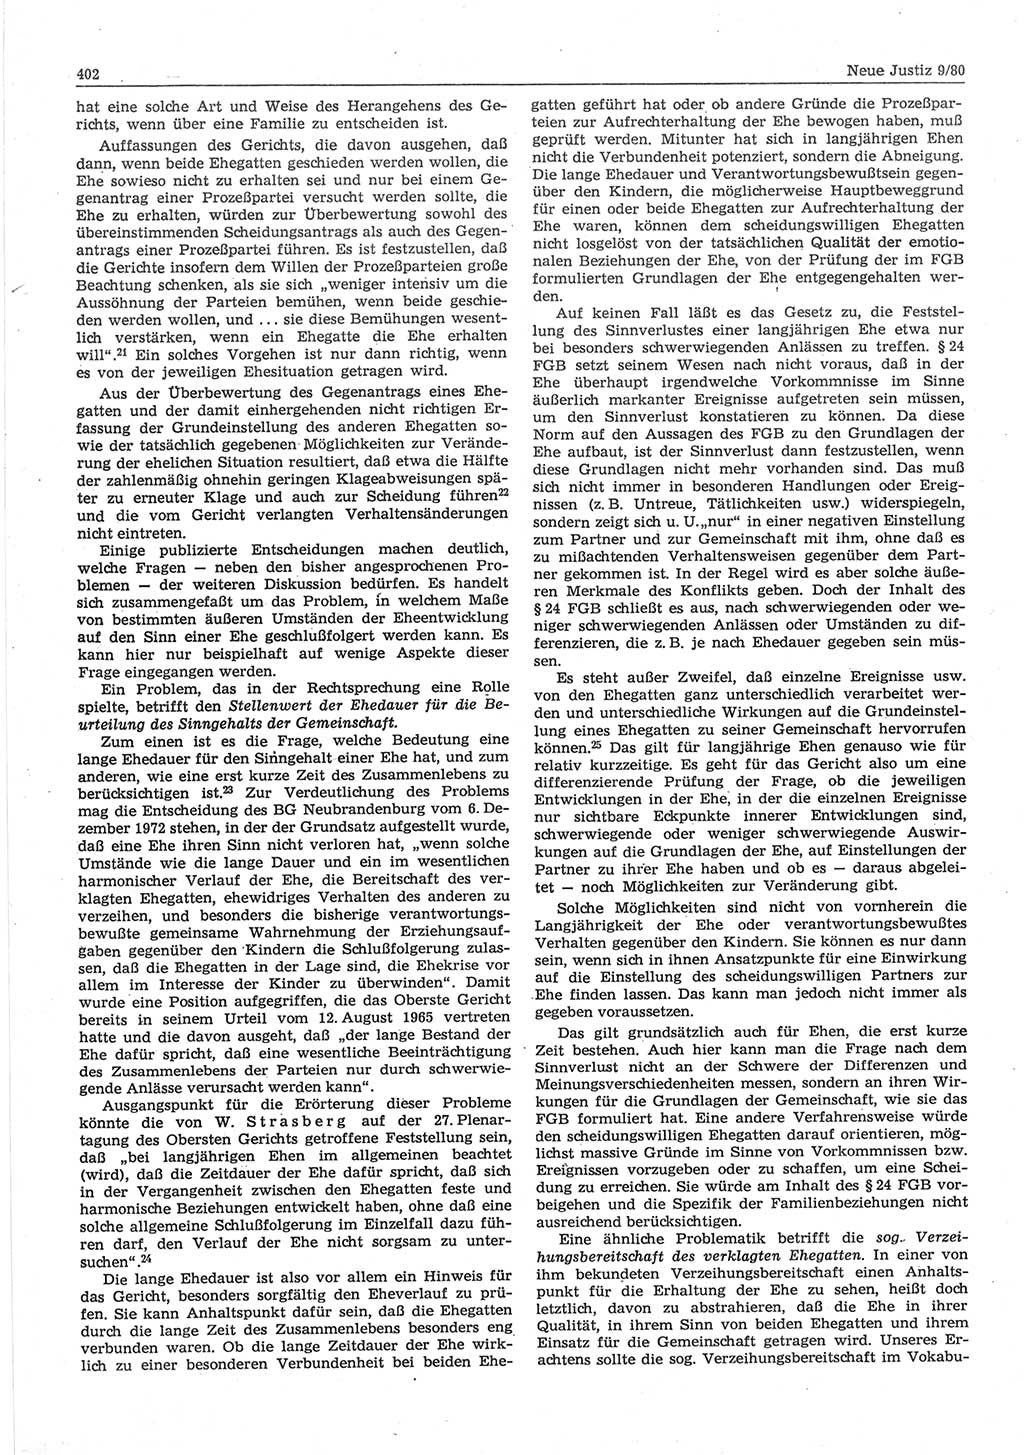 Neue Justiz (NJ), Zeitschrift für sozialistisches Recht und Gesetzlichkeit [Deutsche Demokratische Republik (DDR)], 34. Jahrgang 1980, Seite 402 (NJ DDR 1980, S. 402)